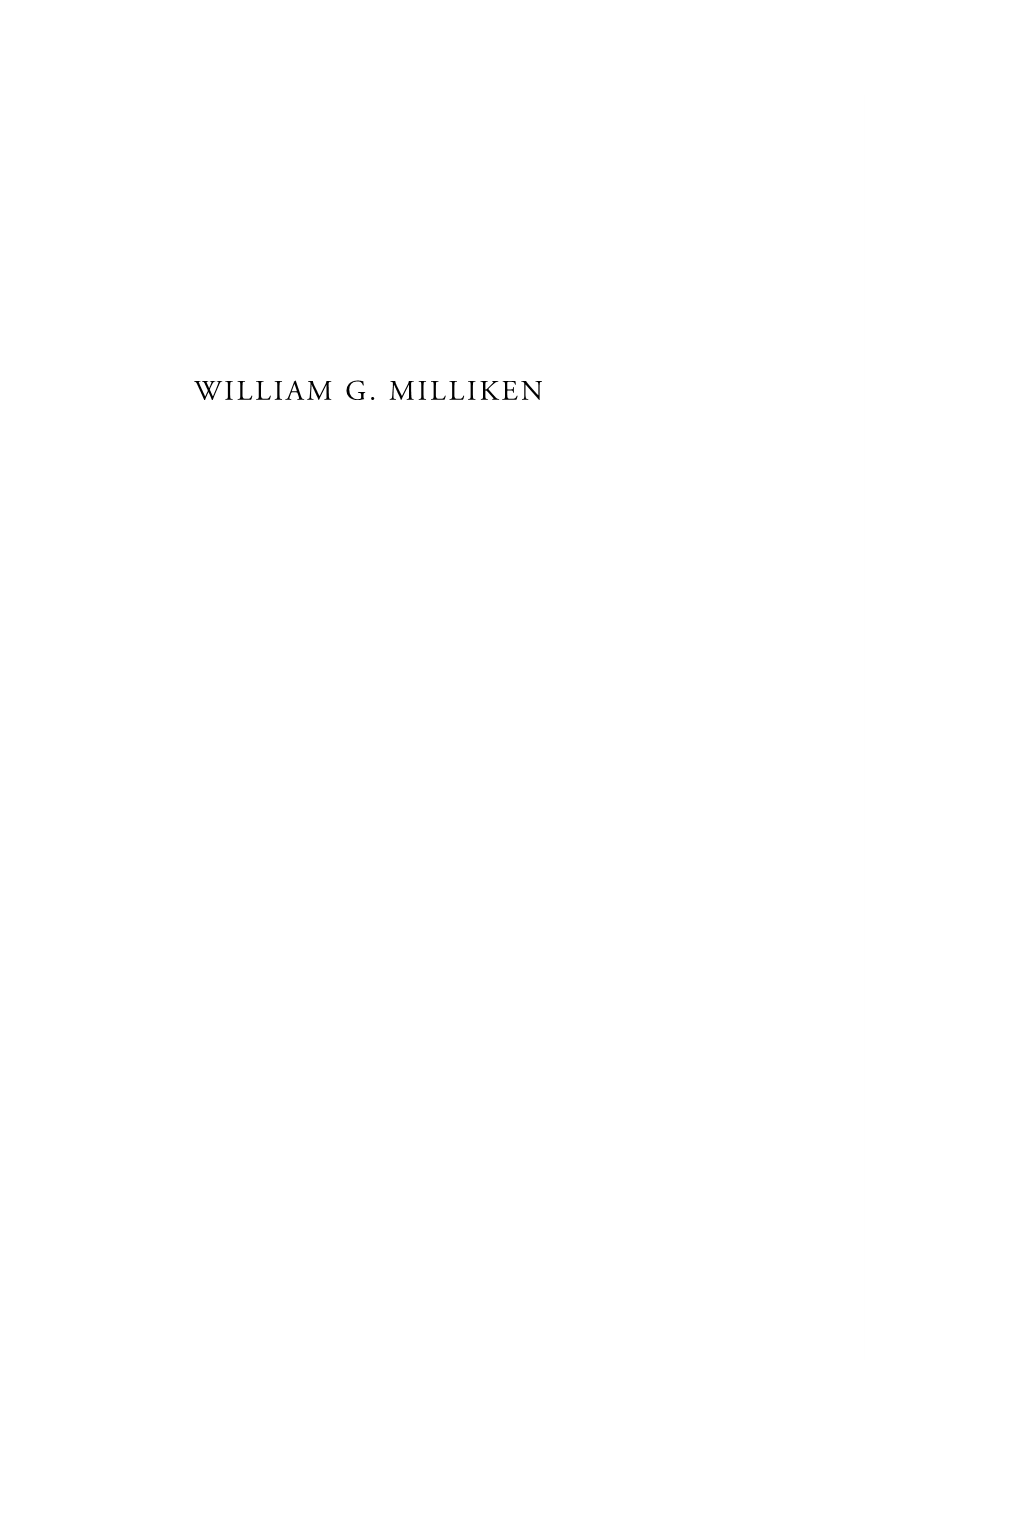 William G. Milliken